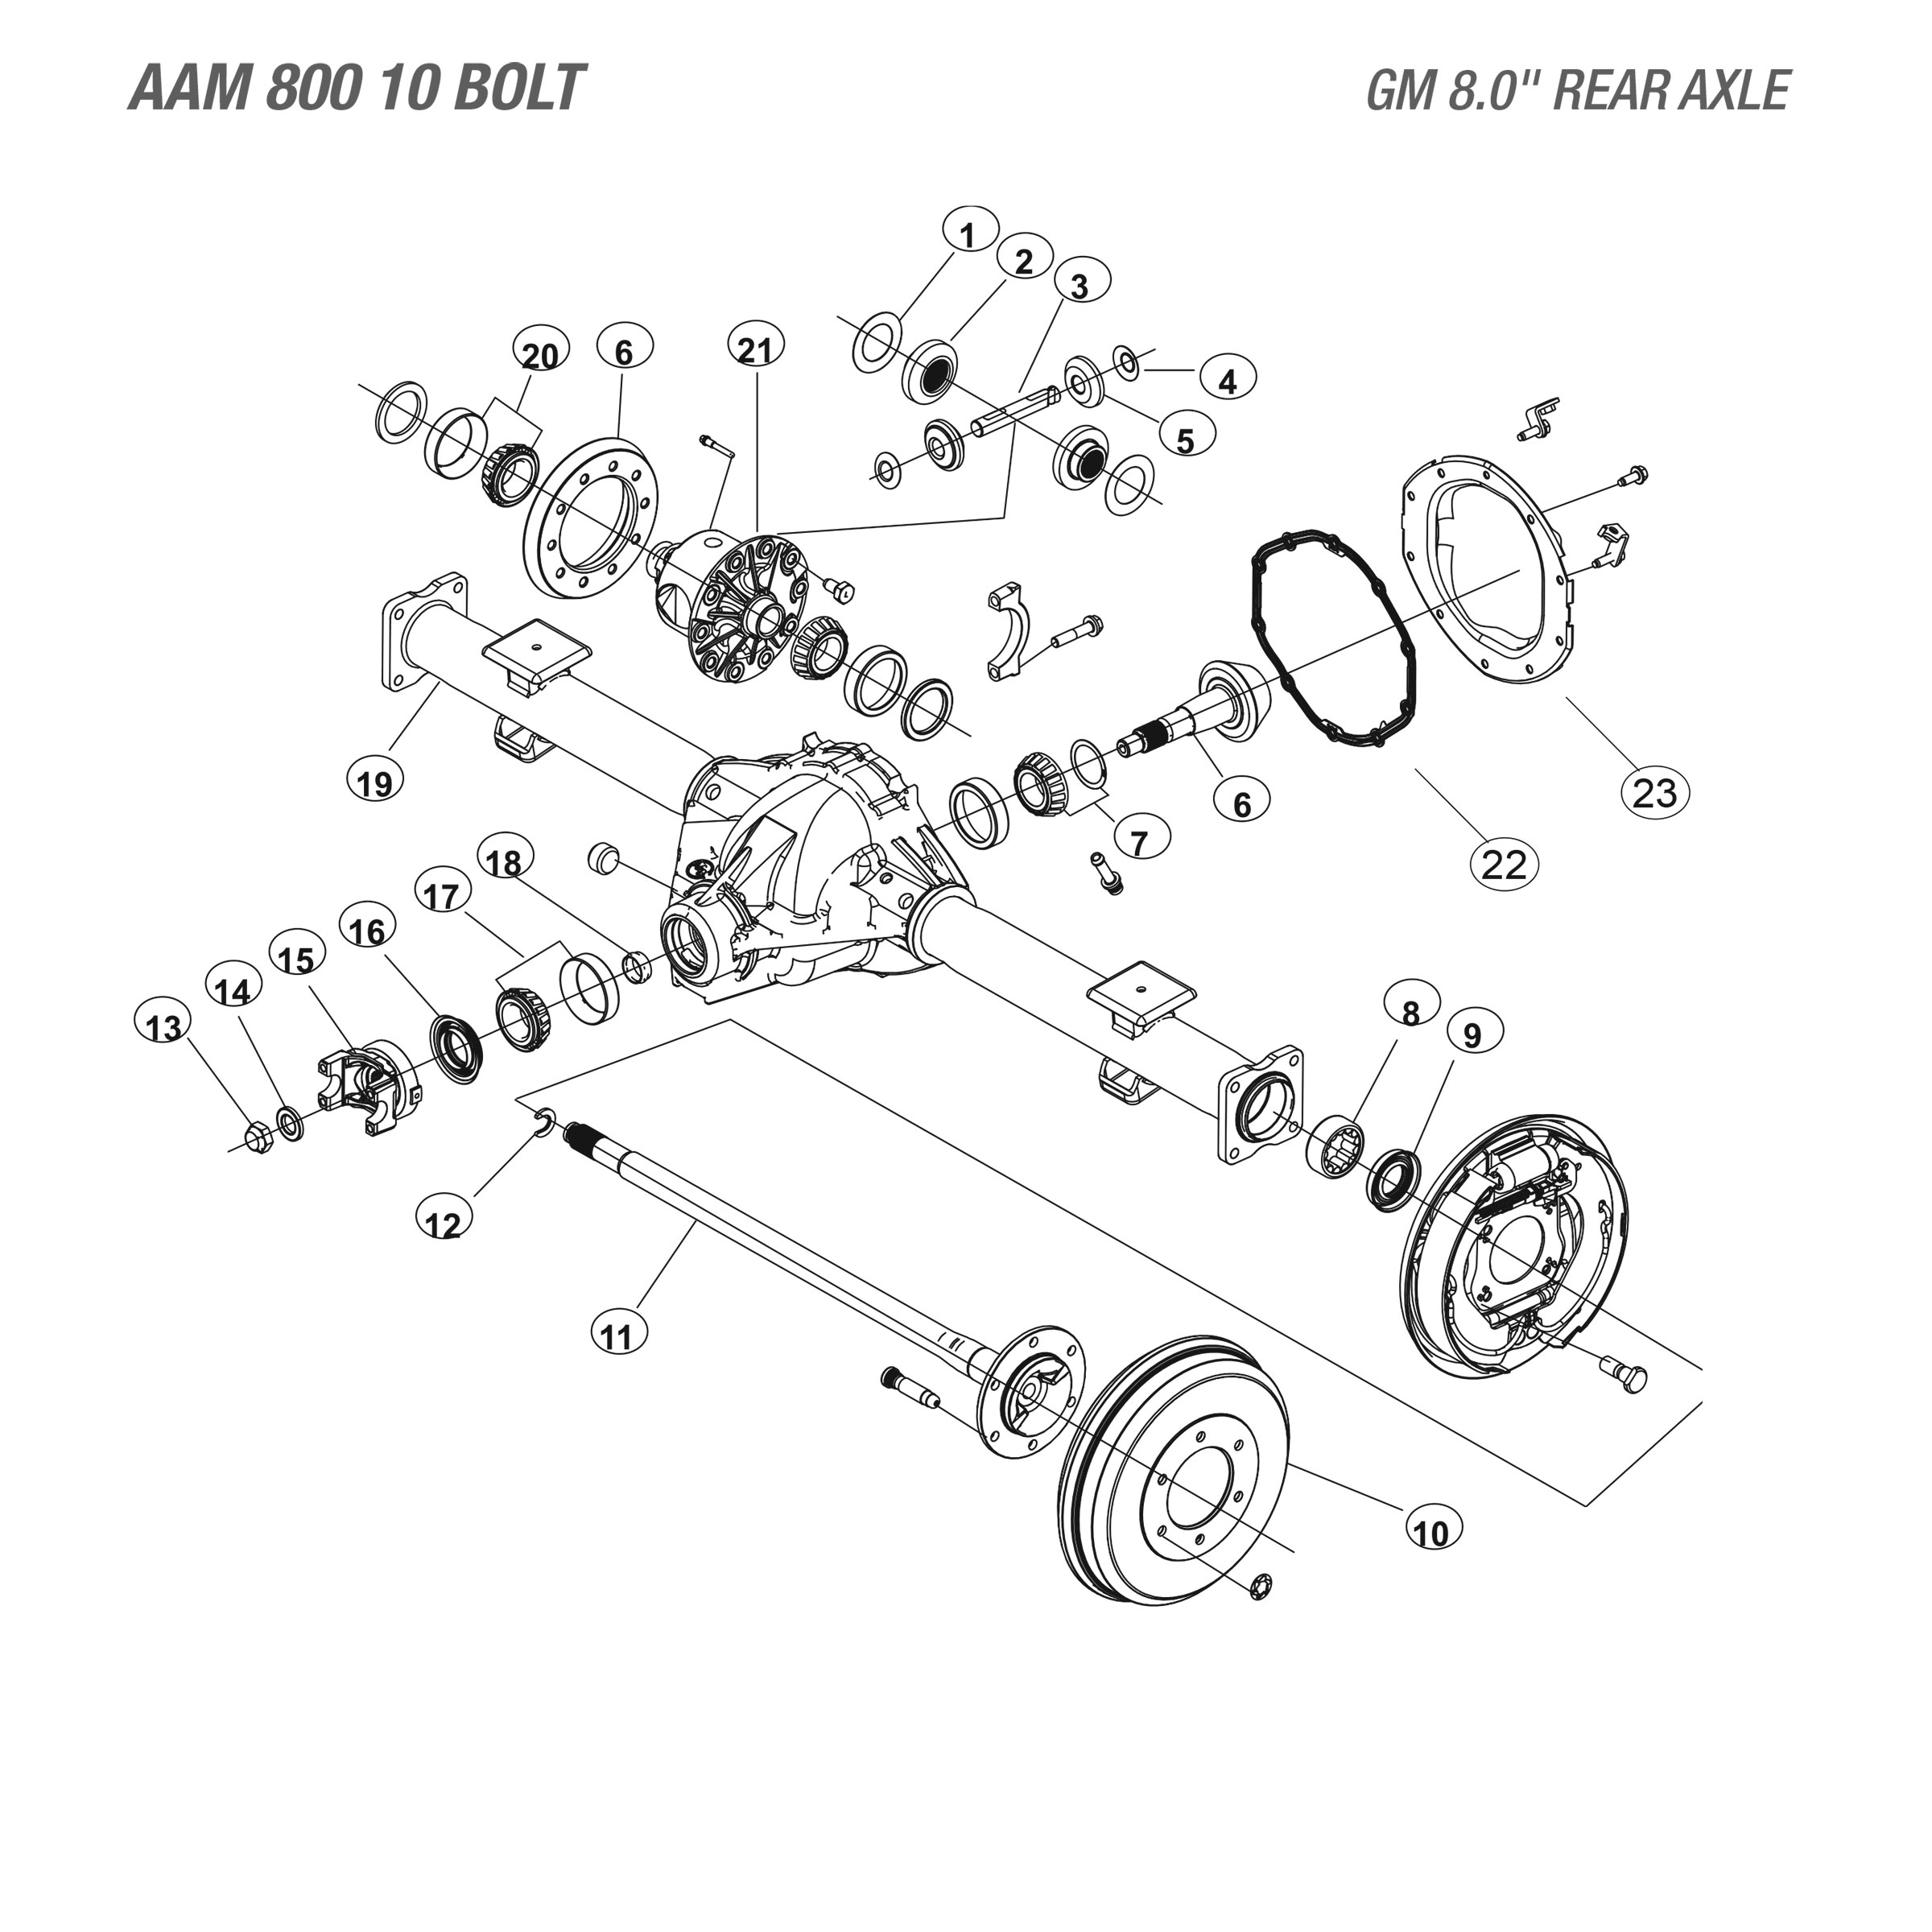 GM 8 Rear Axle - Parts Diagram